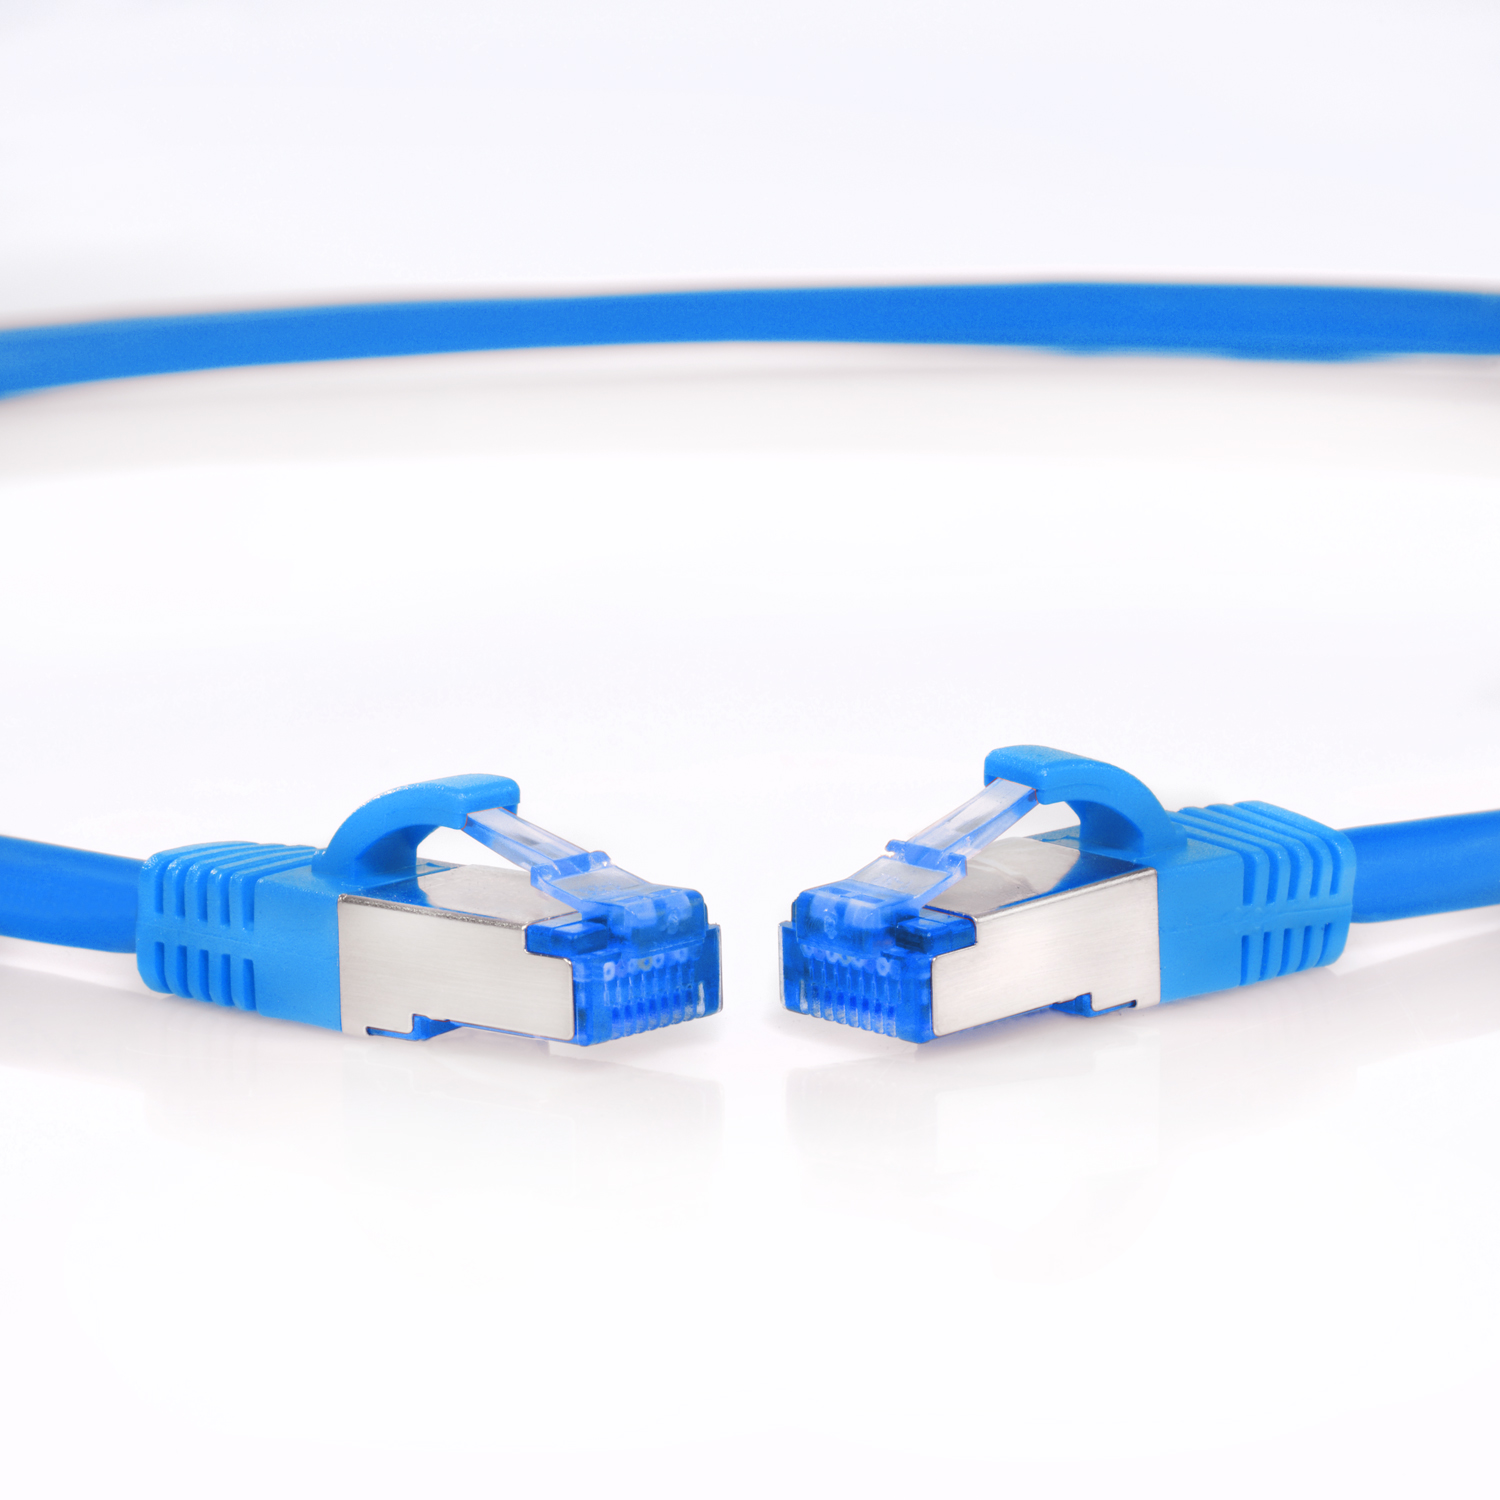 TPFNET 2m Patchkabel 10GBit, S/FTP / 2 m Netzwerkkabel Netzwerkkabel, blau